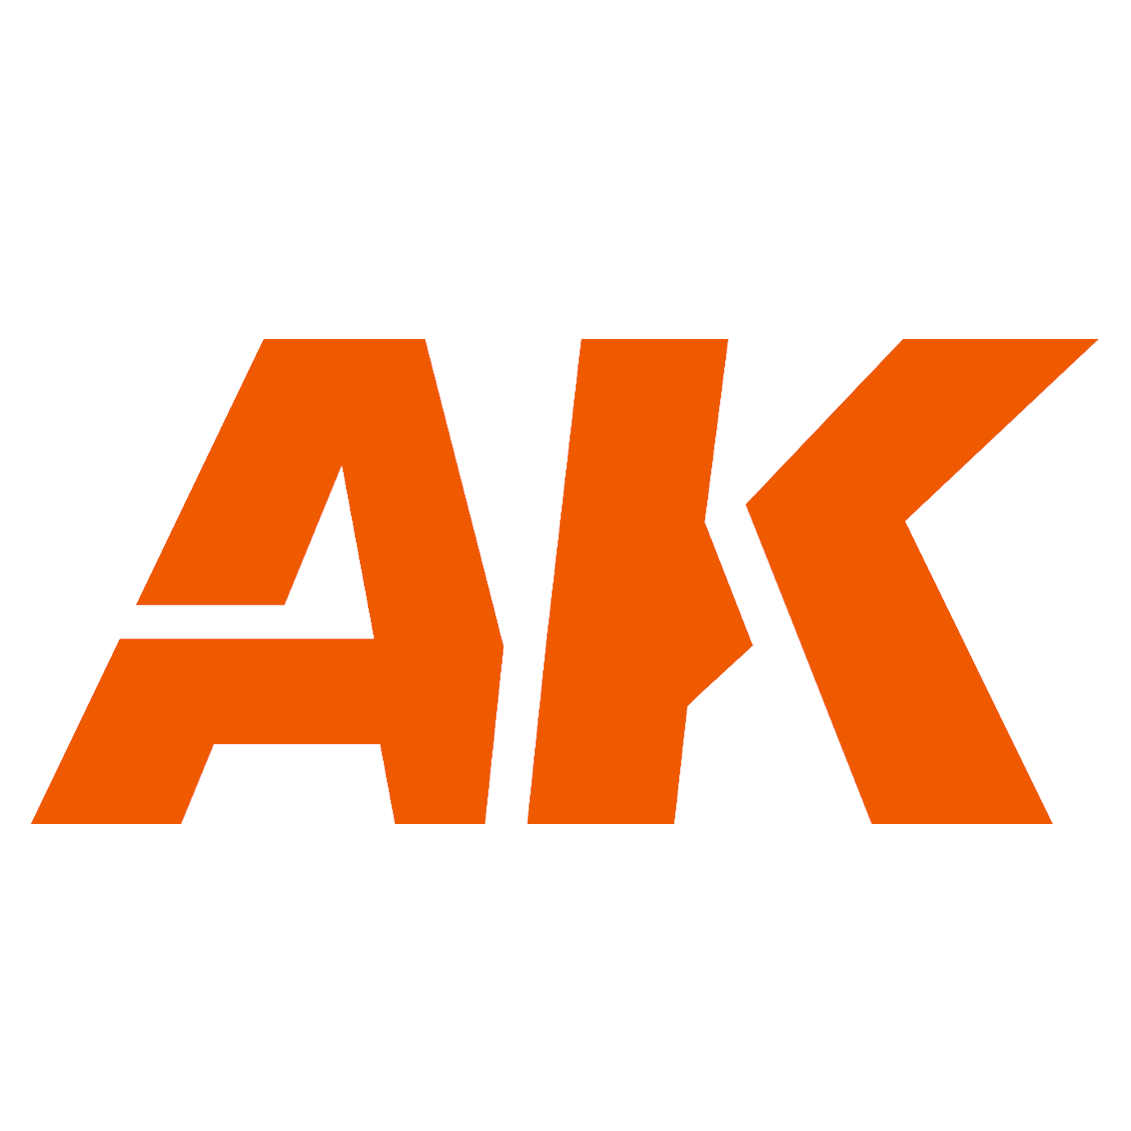 AK Interactive Grass Flock - Summer(250ml)